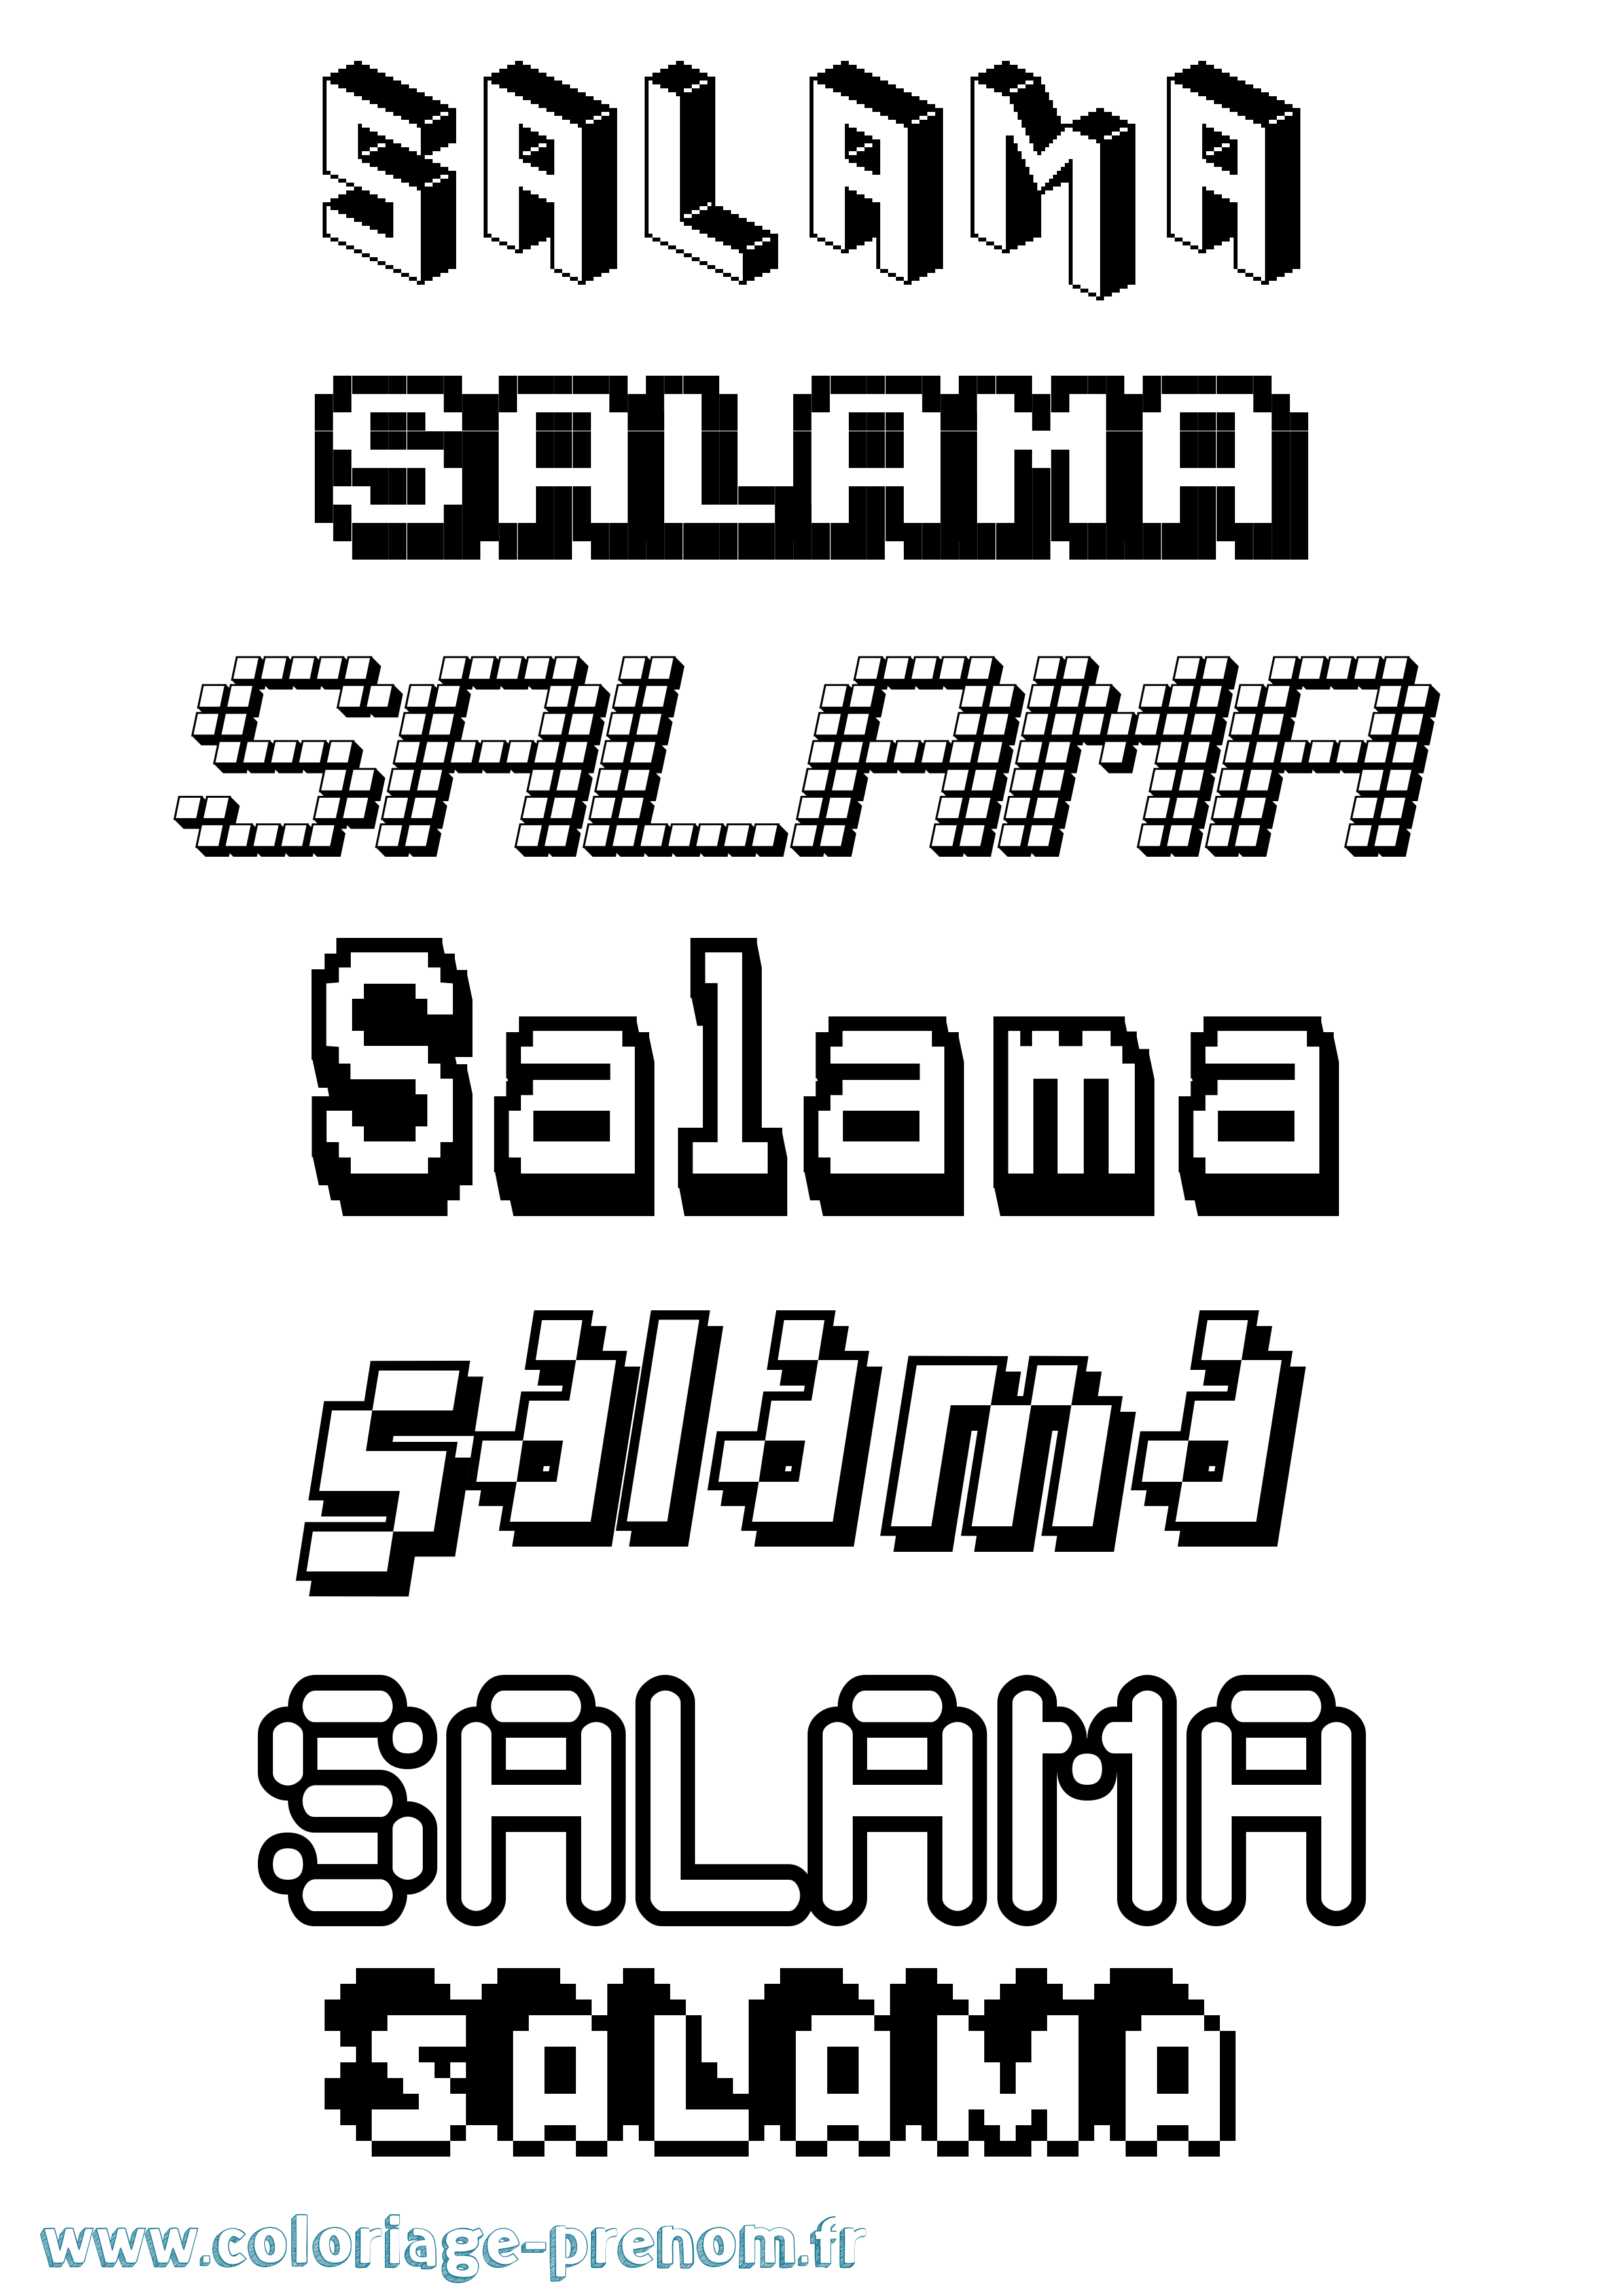 Coloriage prénom Salama Pixel